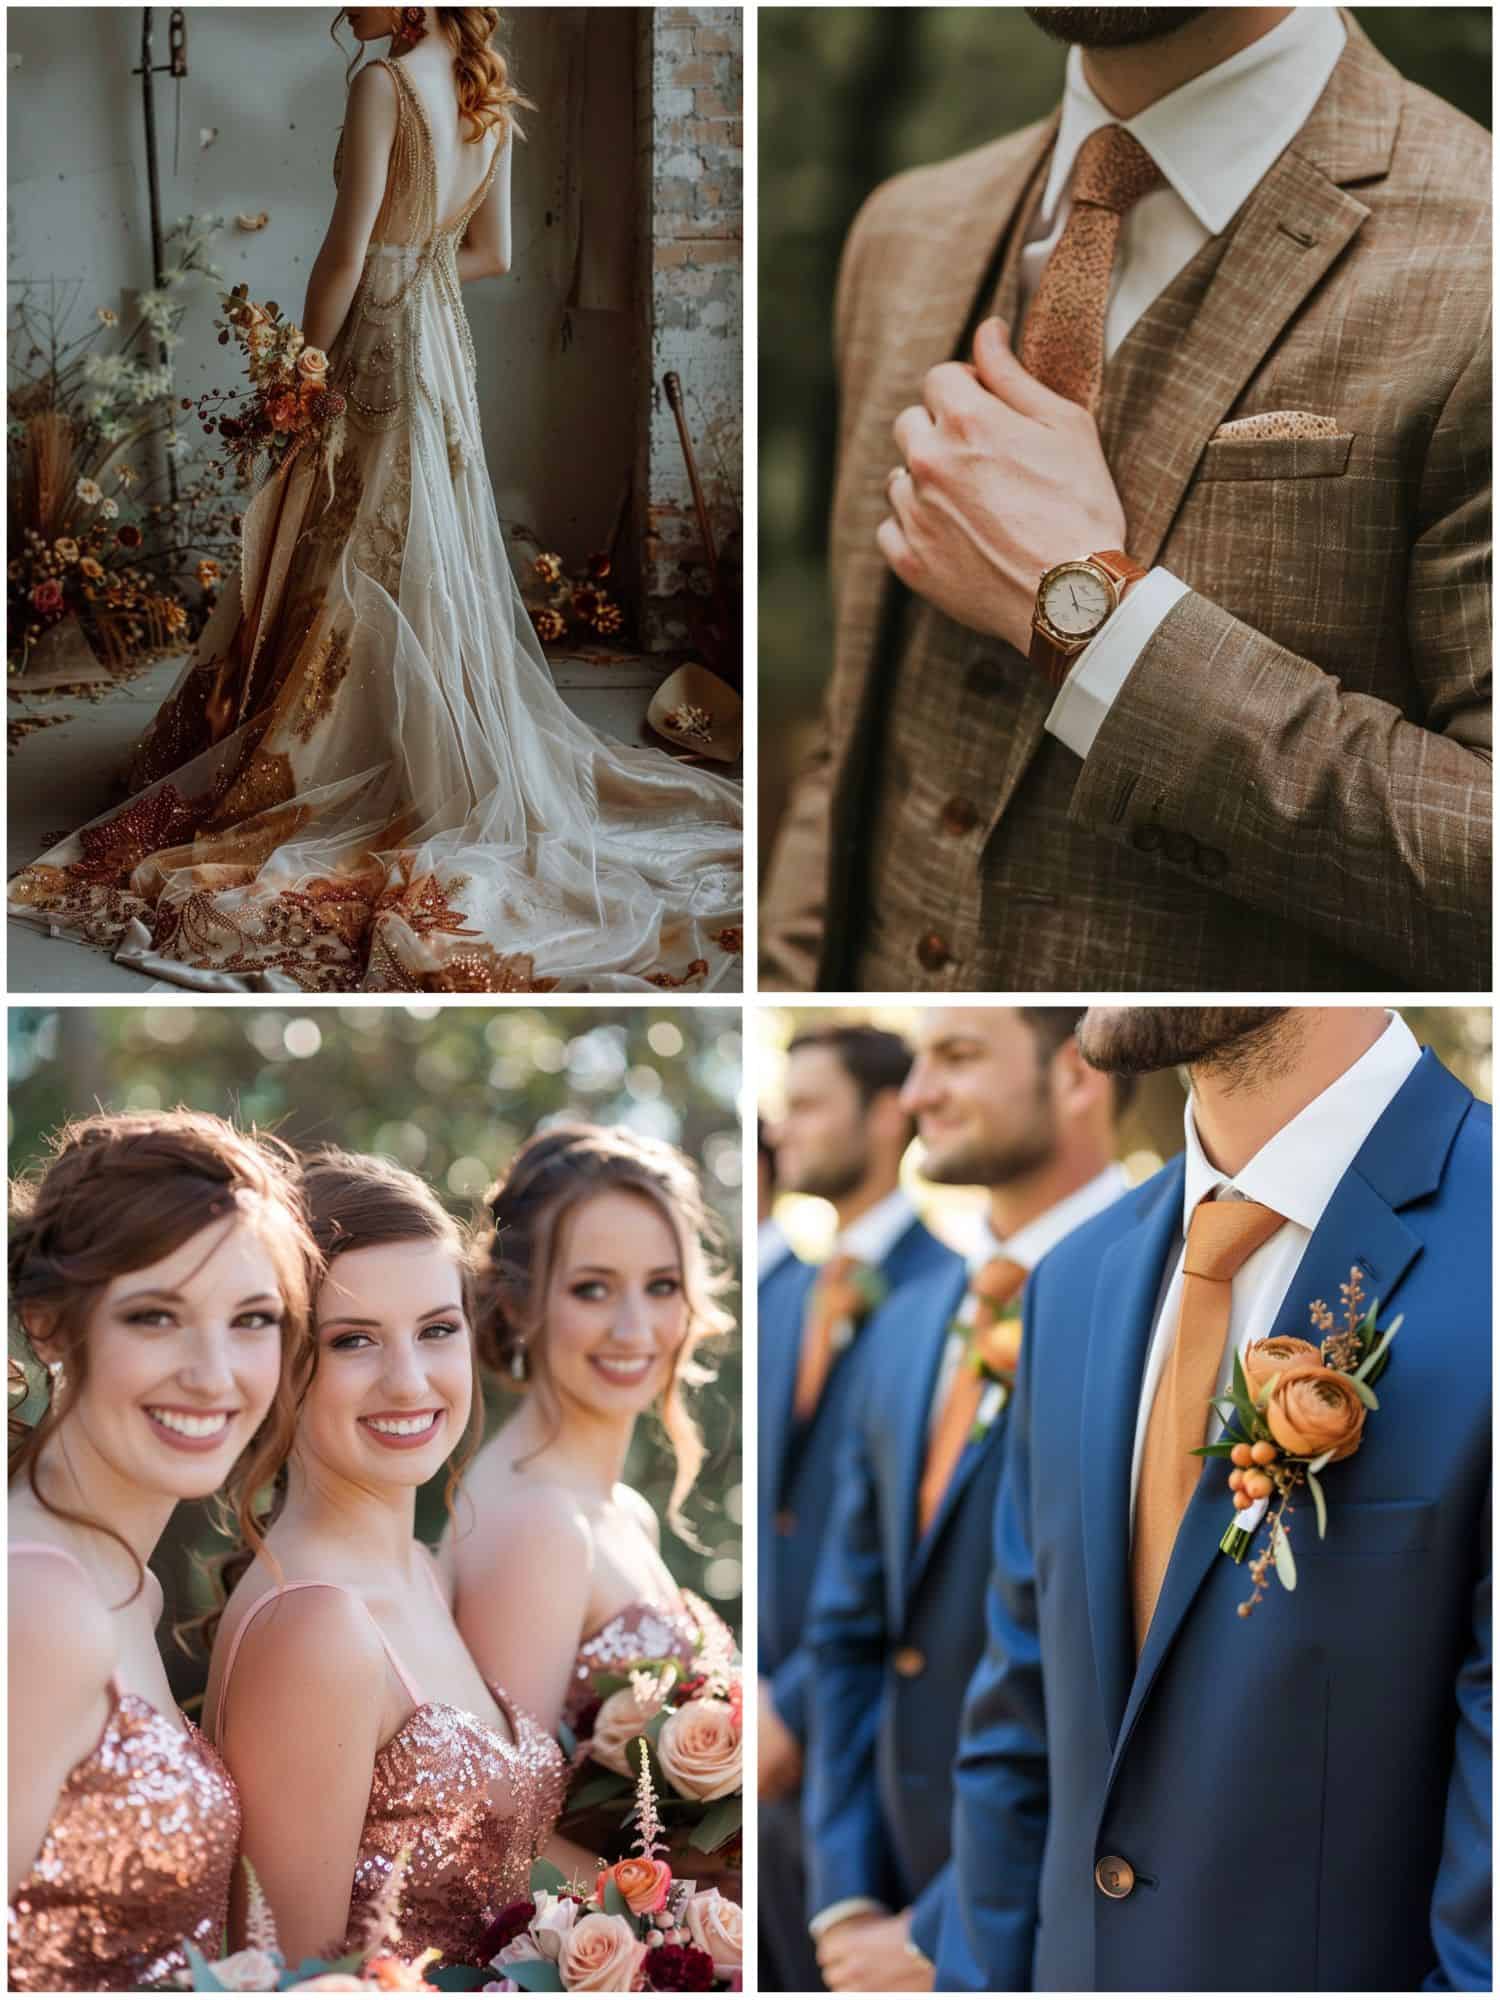 copper wedding attire ideas